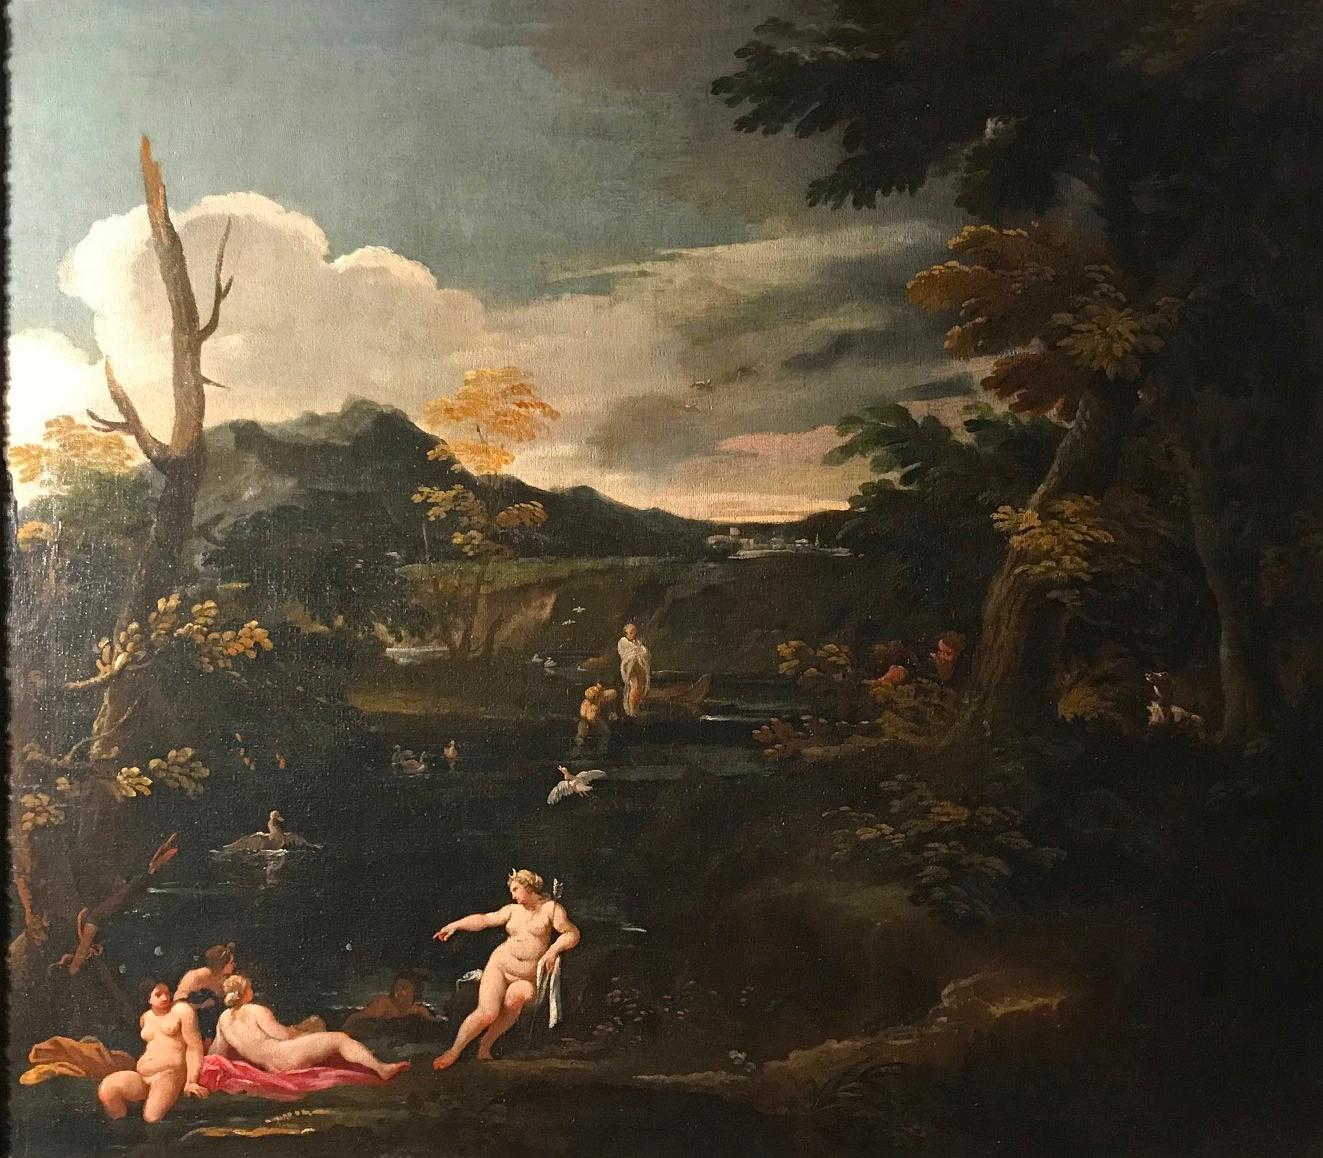 Importante peinture mythologique du XVIIe siècle Diane et actrice, huile sur toile  - Painting de Giovan Battista Viola